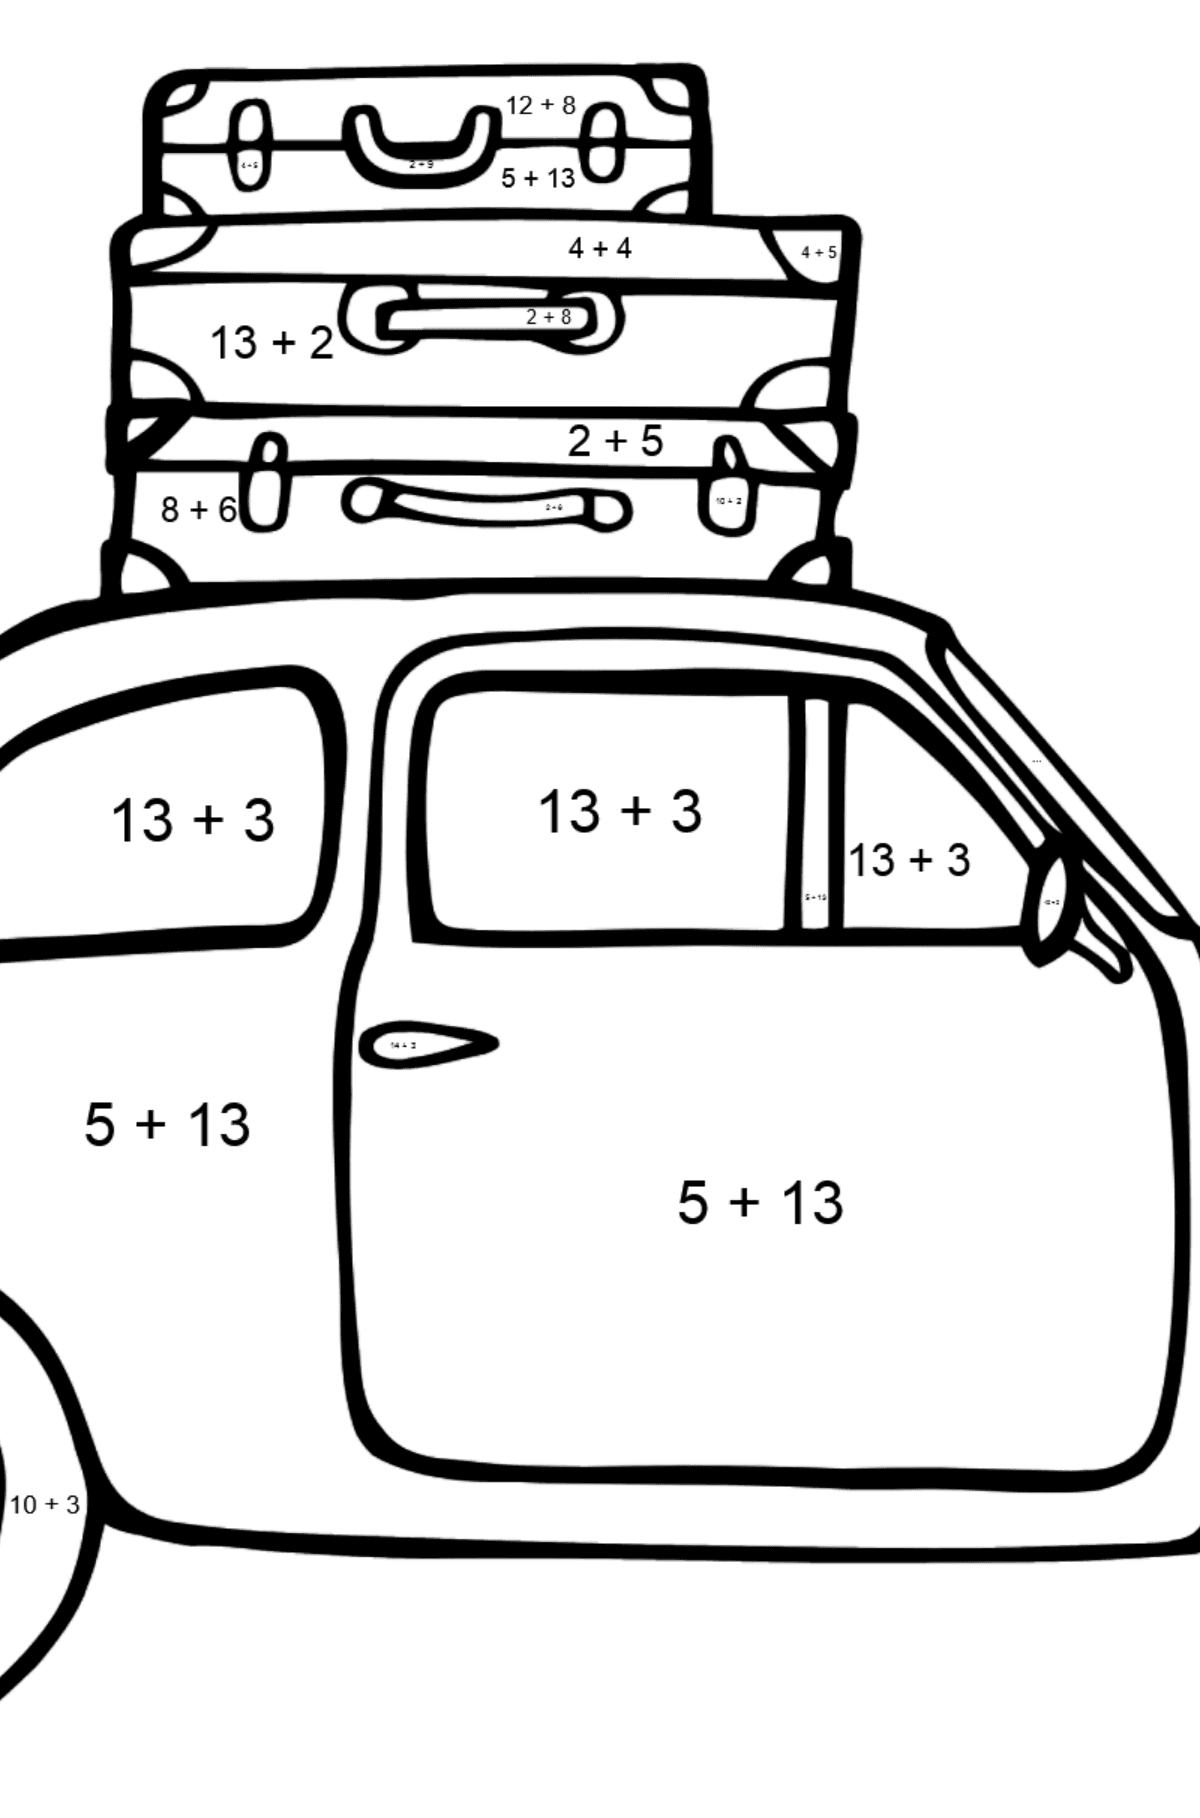 Dibujo de Coche Fiat 500 para colorear - Colorear con Matemáticas - Sumas para Niños